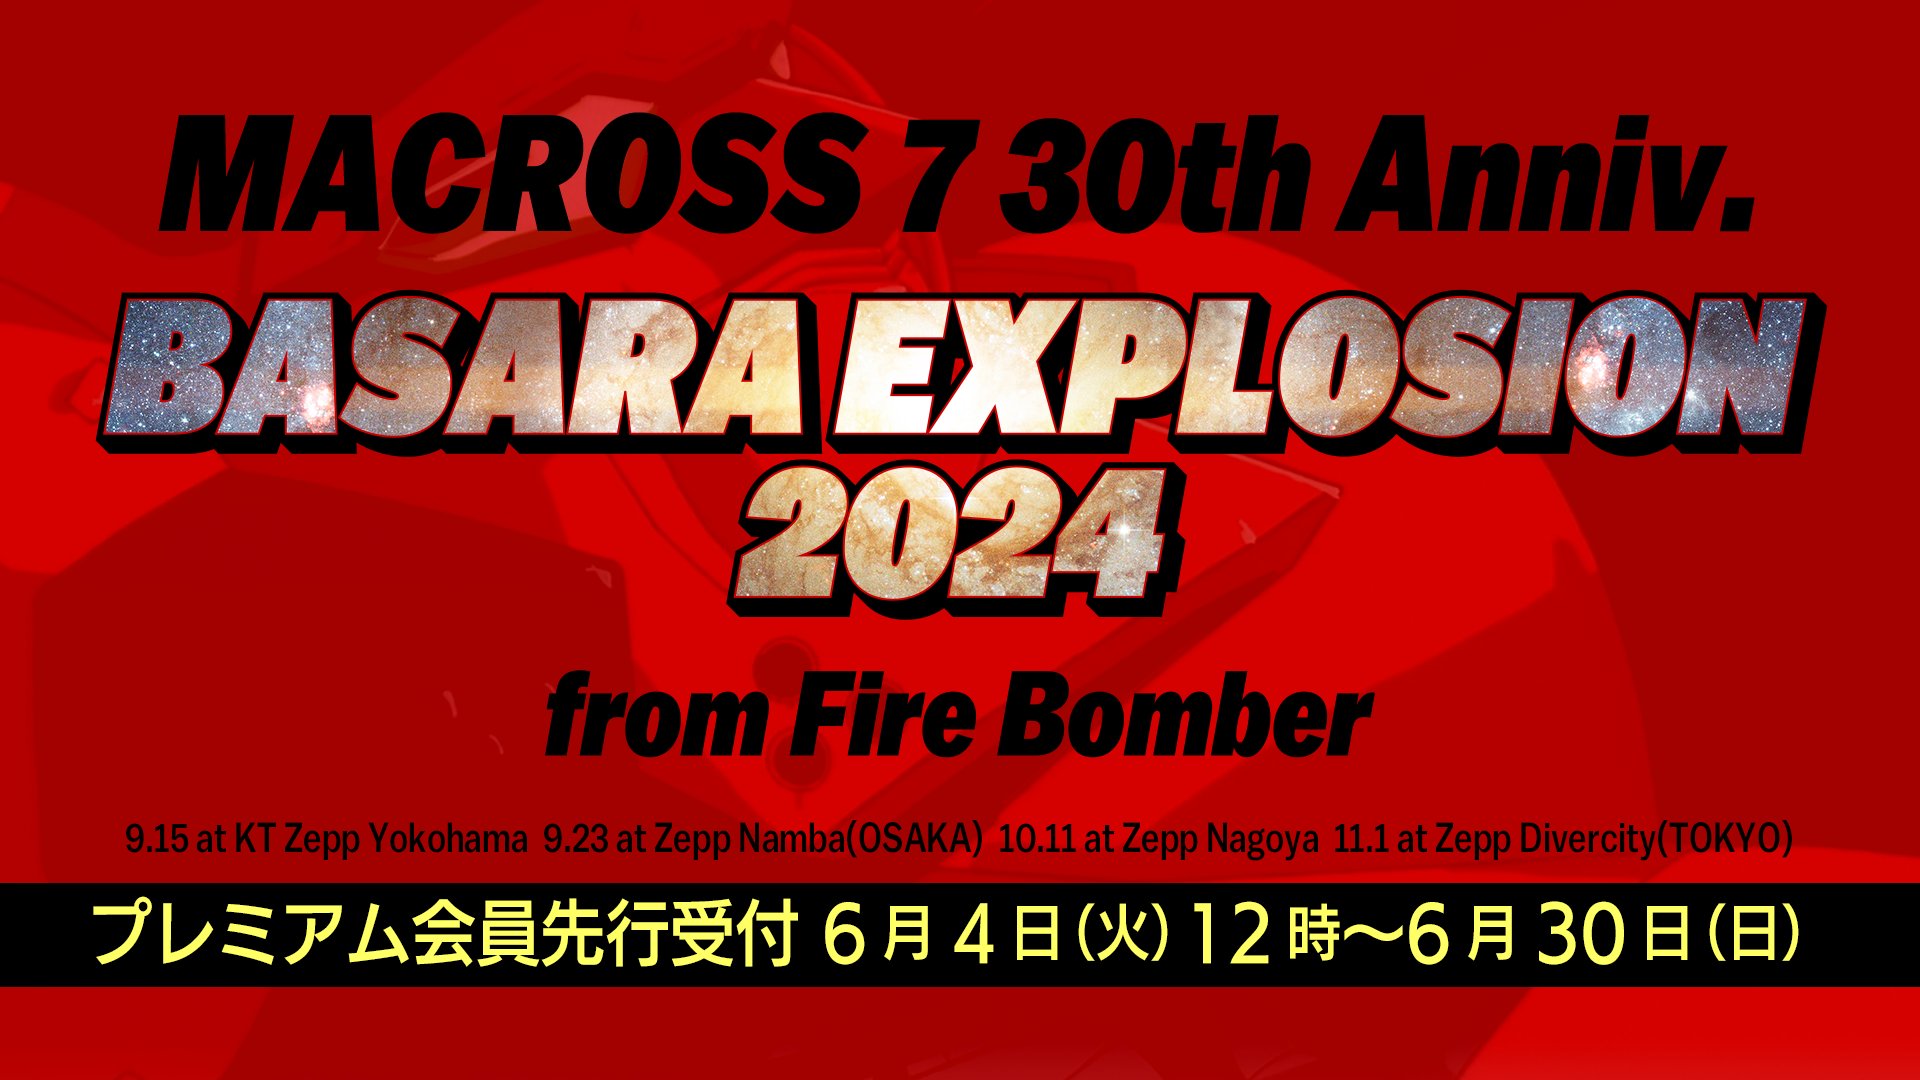 「MACROSS 7 30th Anniv. BASARA EXPLOSION 2024 from FIRE BOMBER」超時空ファンクラブ「マクロス魂」プレミアム会員先行